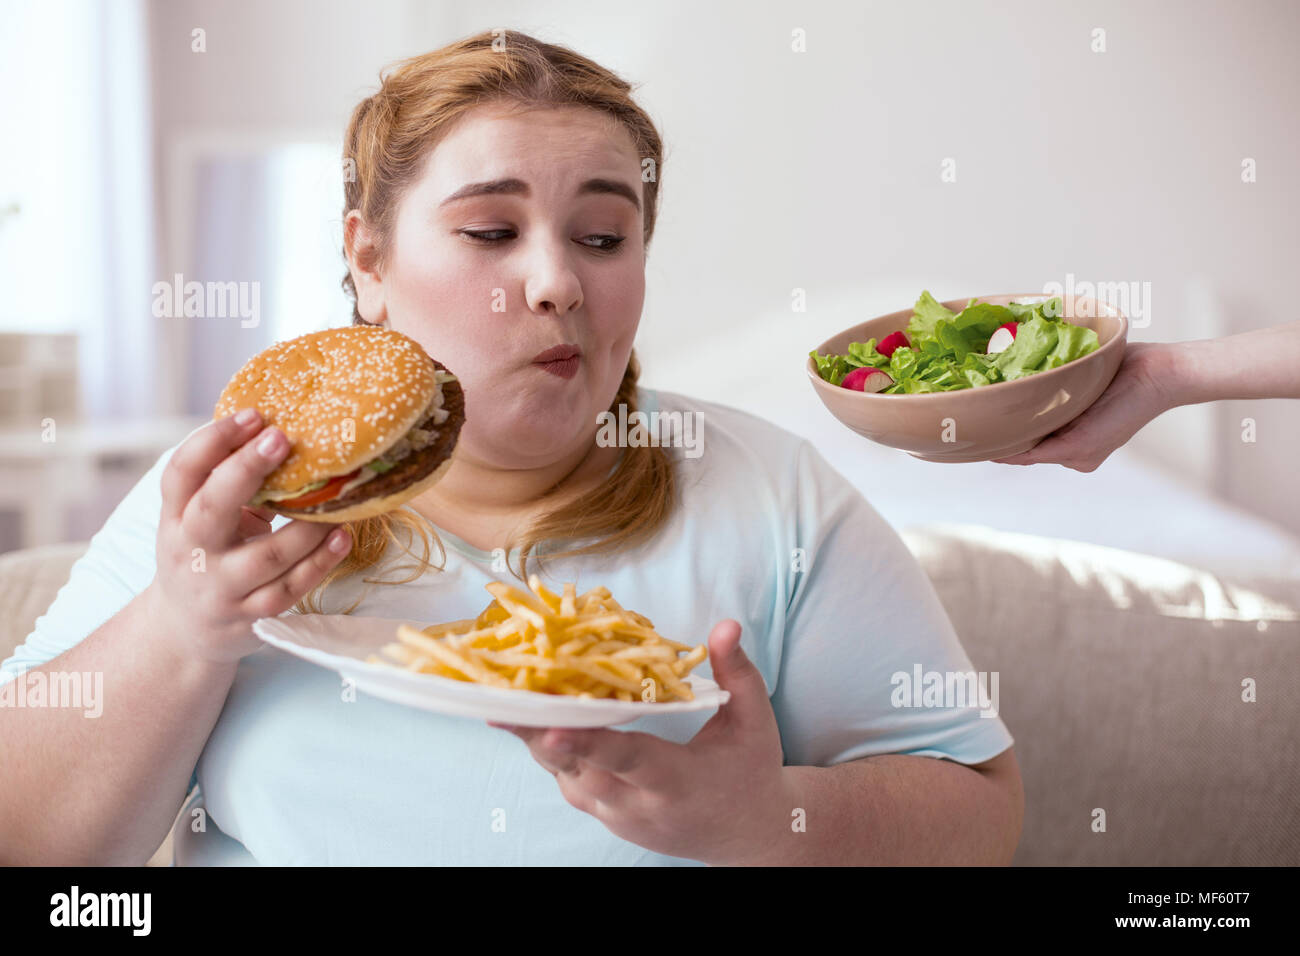 Thoughtful chubby woman making choice Stock Photo